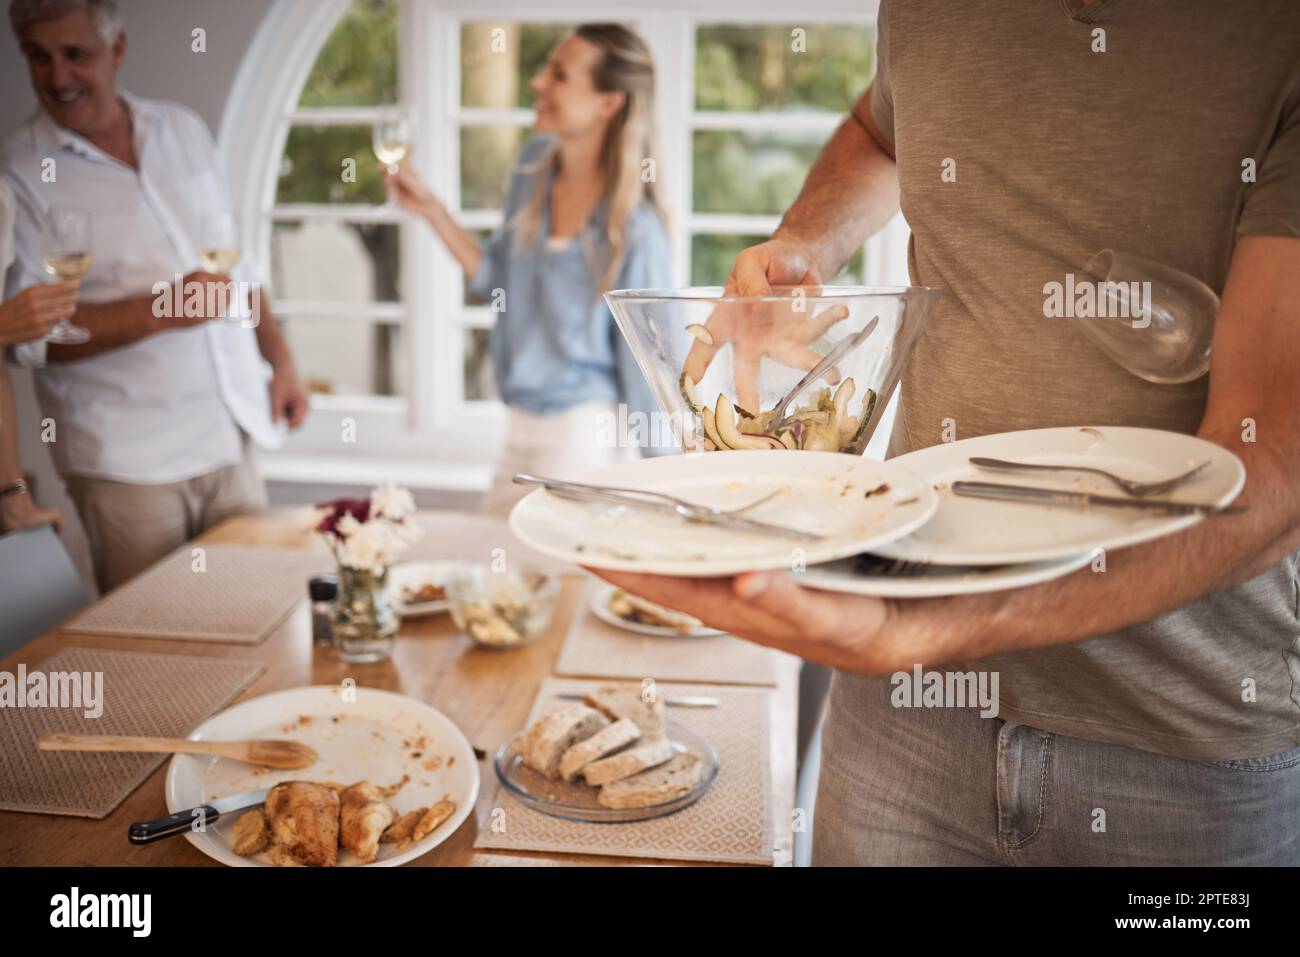 Mittagessen, Familie und Mann räumen nach dem Essen vom Tisch das Geschirr  ab. Nach dem Mittagessen mit der Familie aufräumen, wegpacken und Teller  vom Esstisch abräumen Stockfotografie - Alamy